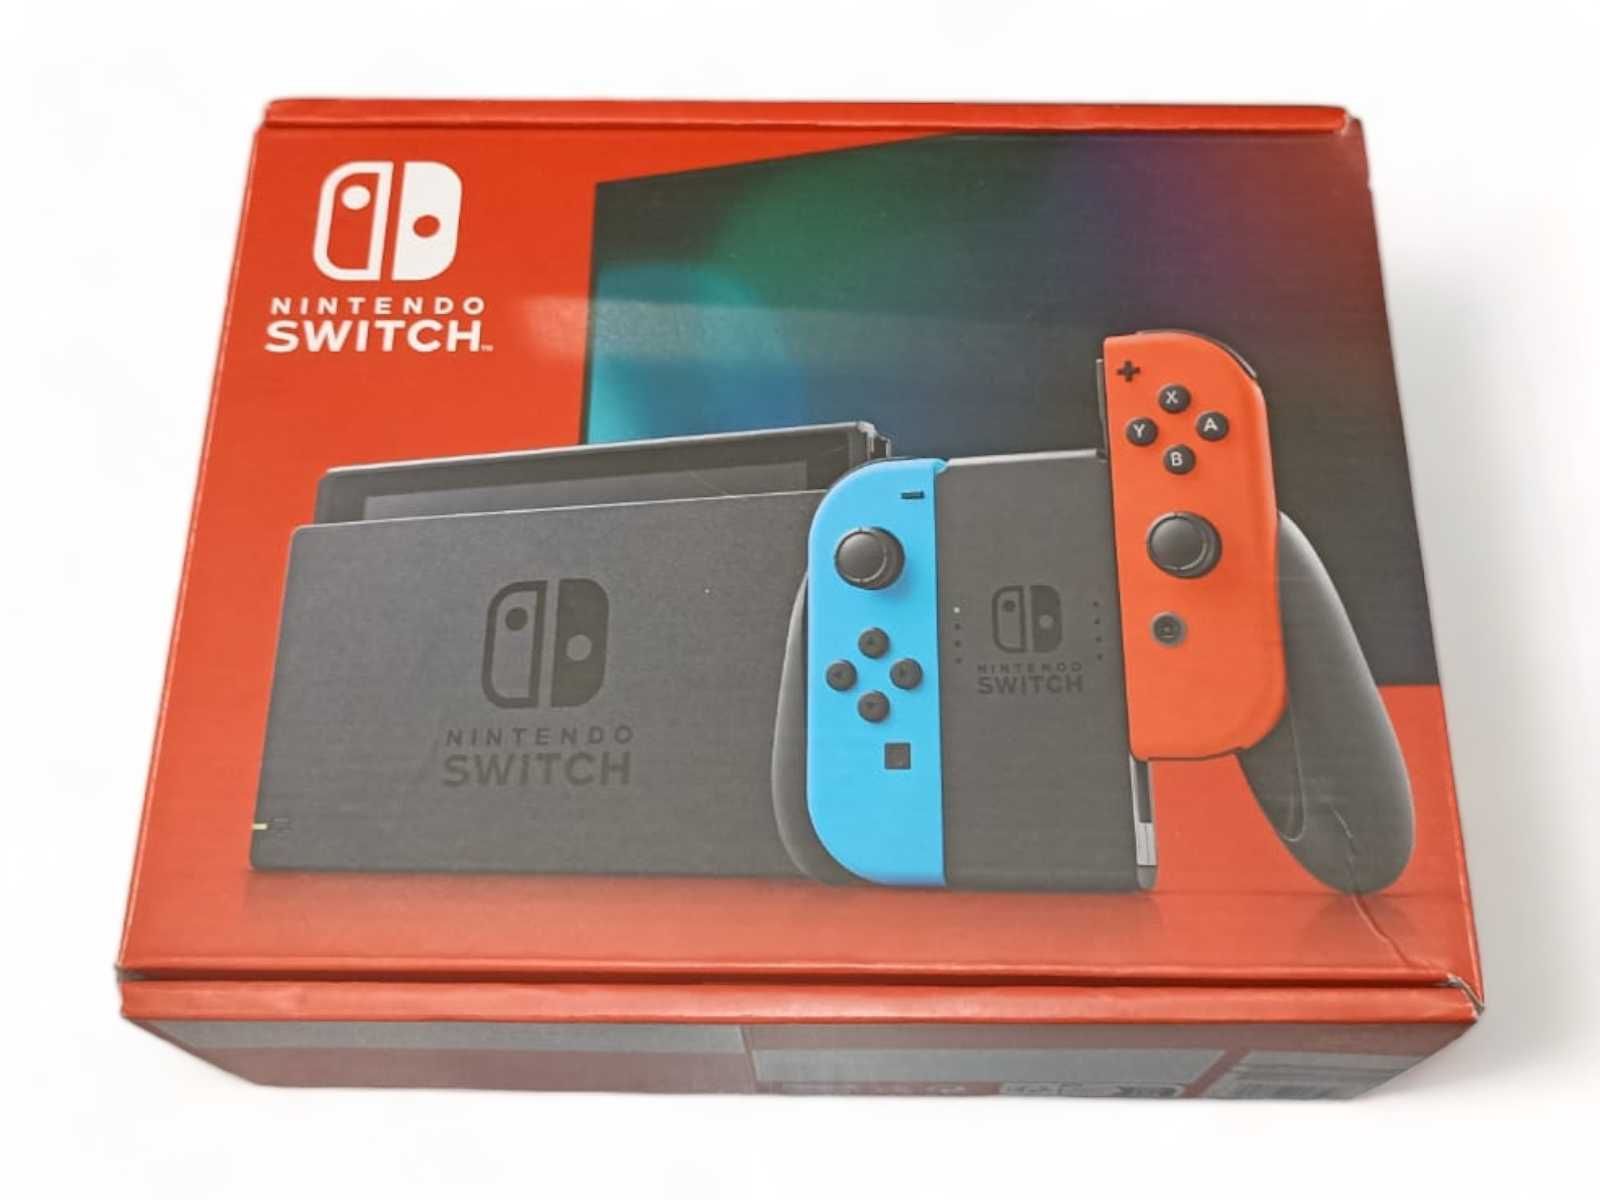 Konsola Nintendo Switch czerwony